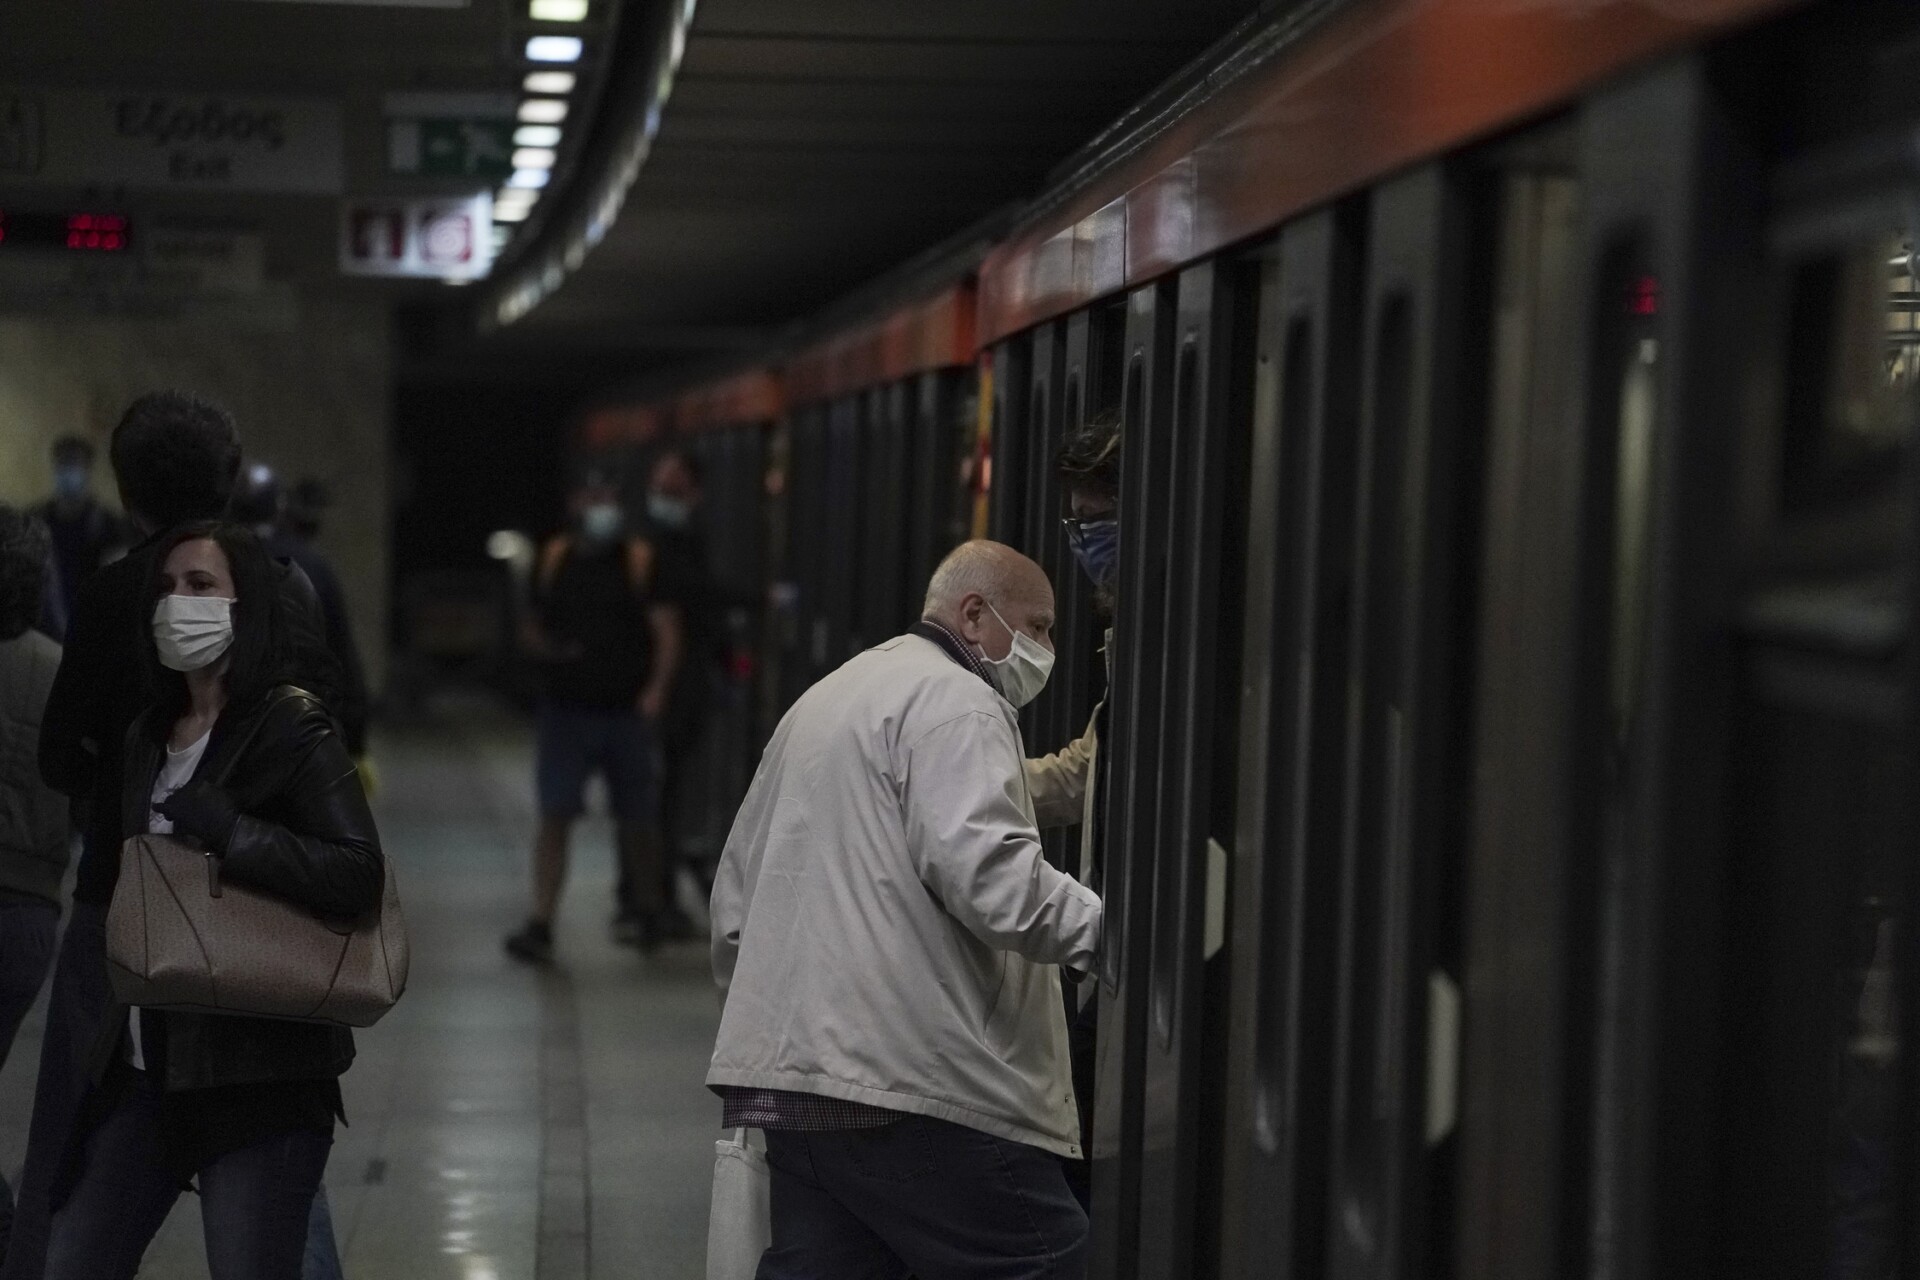 Μετρό: Παράνομη κρίθηκε η στάση εργασίας- Οι συνδικαλιστές επιμένουν